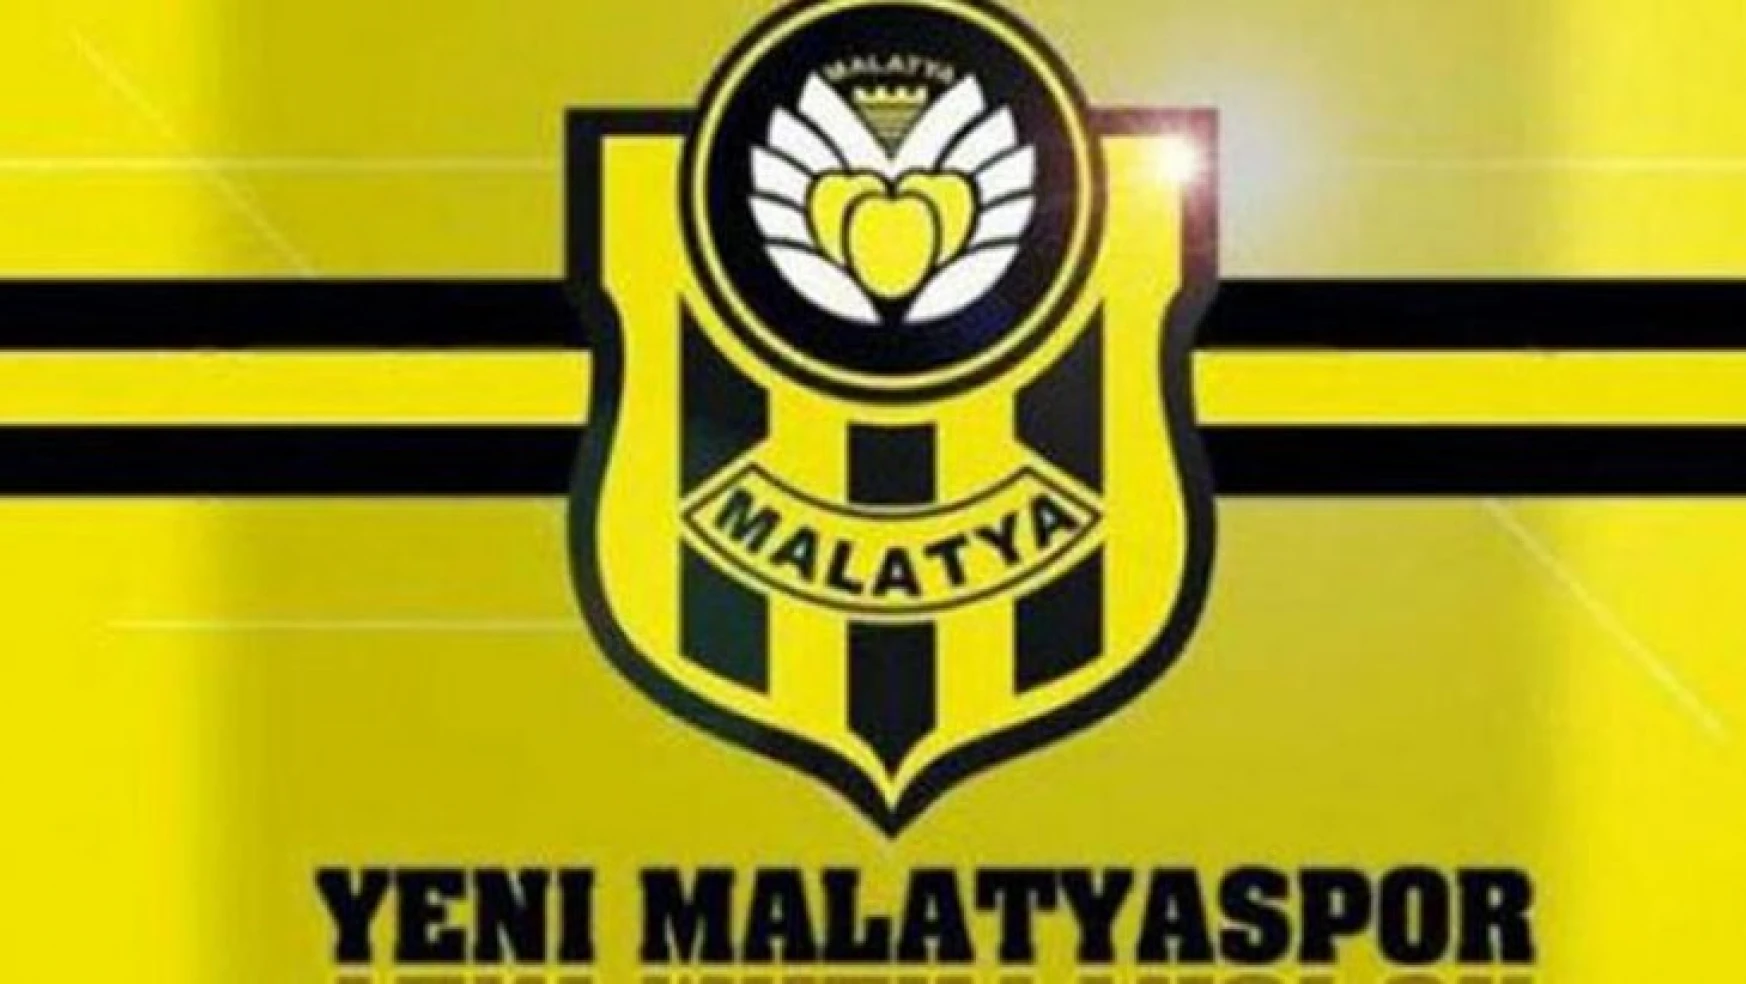 Yeni Malatya Spor Bolu Ve Düzce'de Hazırlanacak